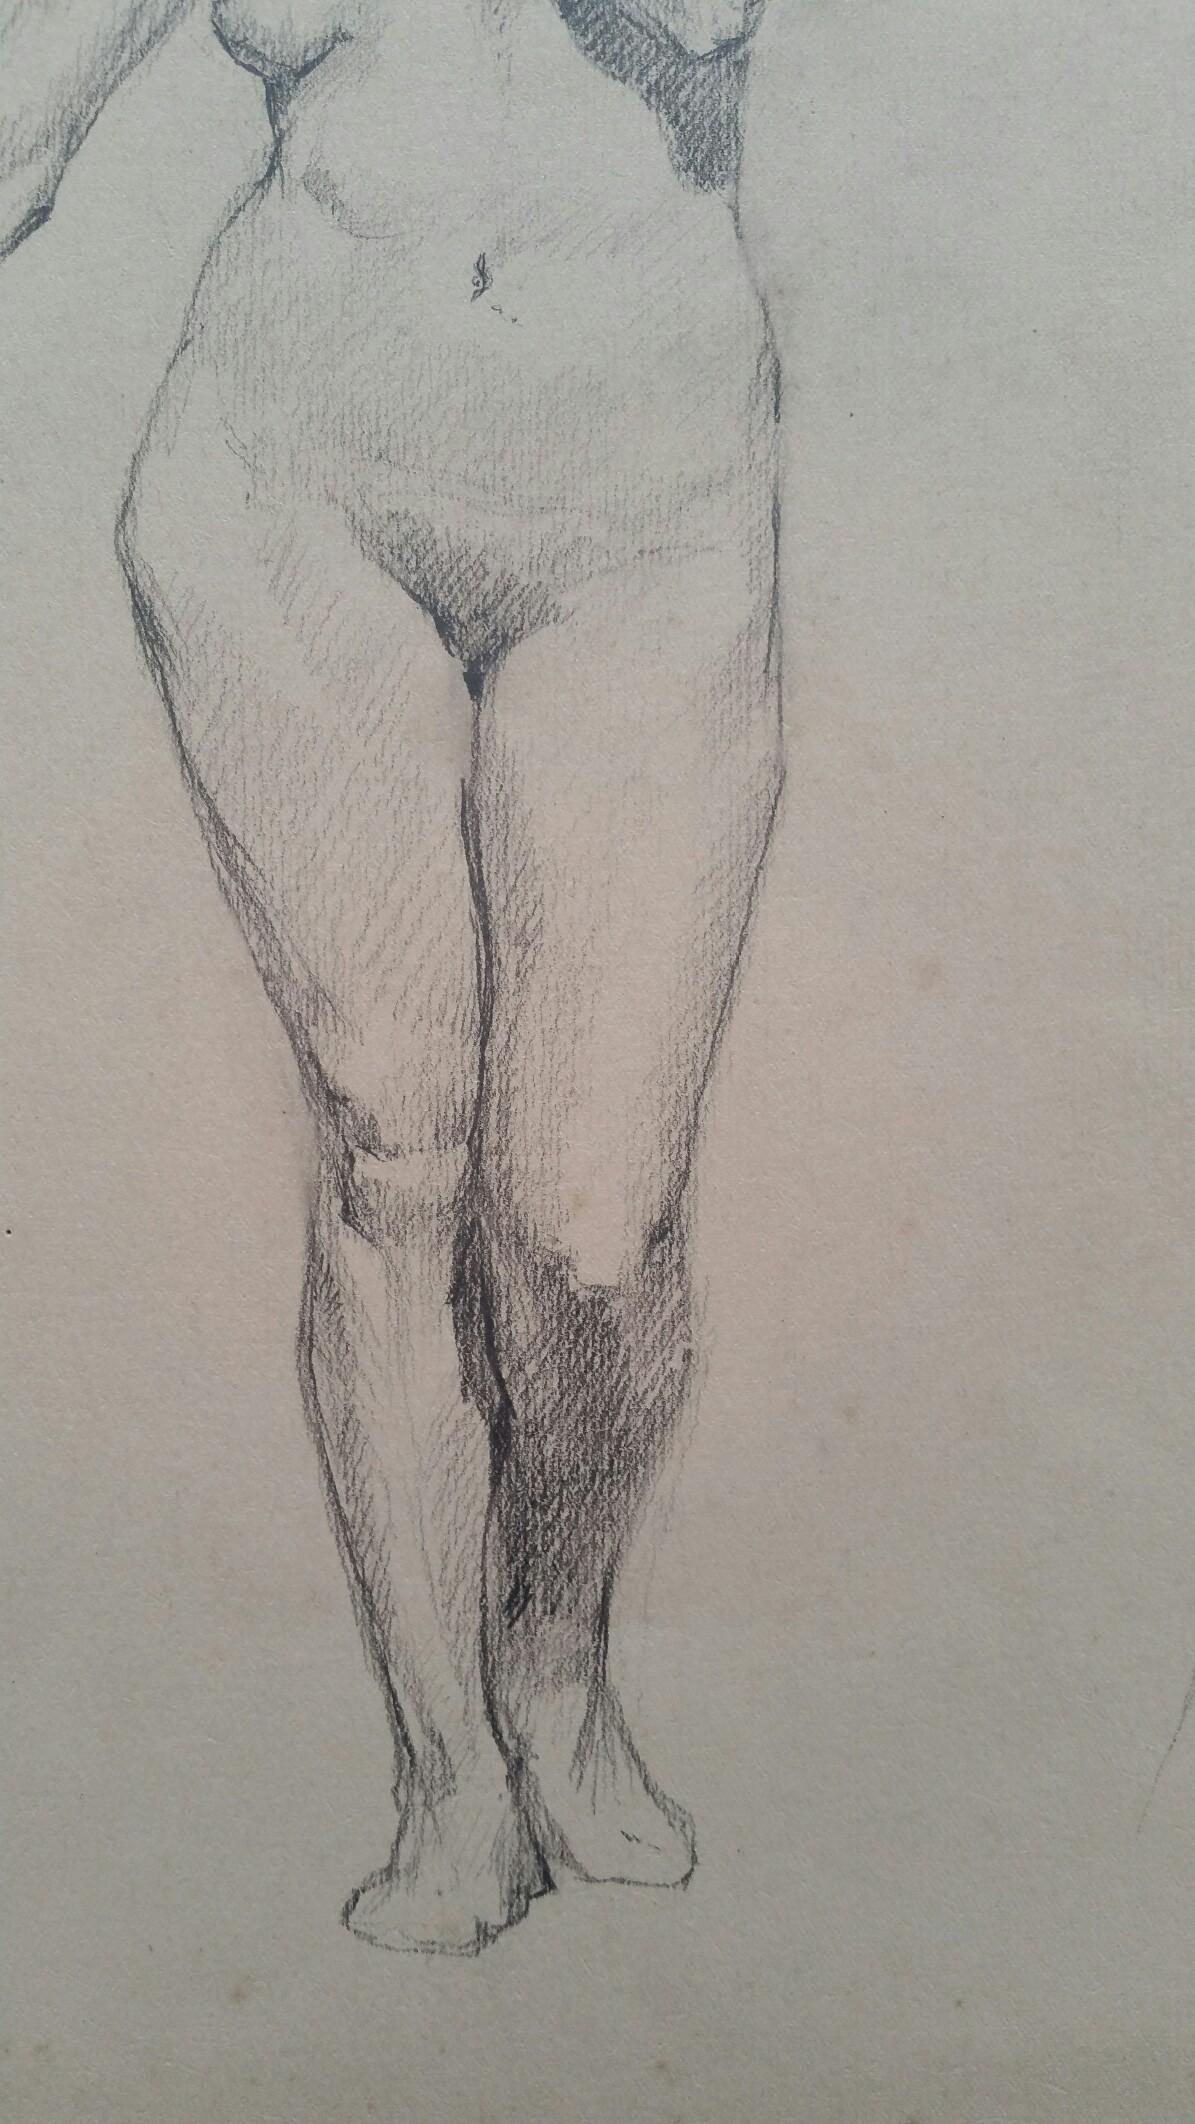 Esquisse au graphite d'une femme nue, debout, en anglais
par Henry George Moon (britannique, 1857-1905)
sur papier d'artiste blanc cassé, non encadré
mesures : feuille 14.75 x 10.5 pouces 

provenance : de la succession de l'artiste

Rapport de